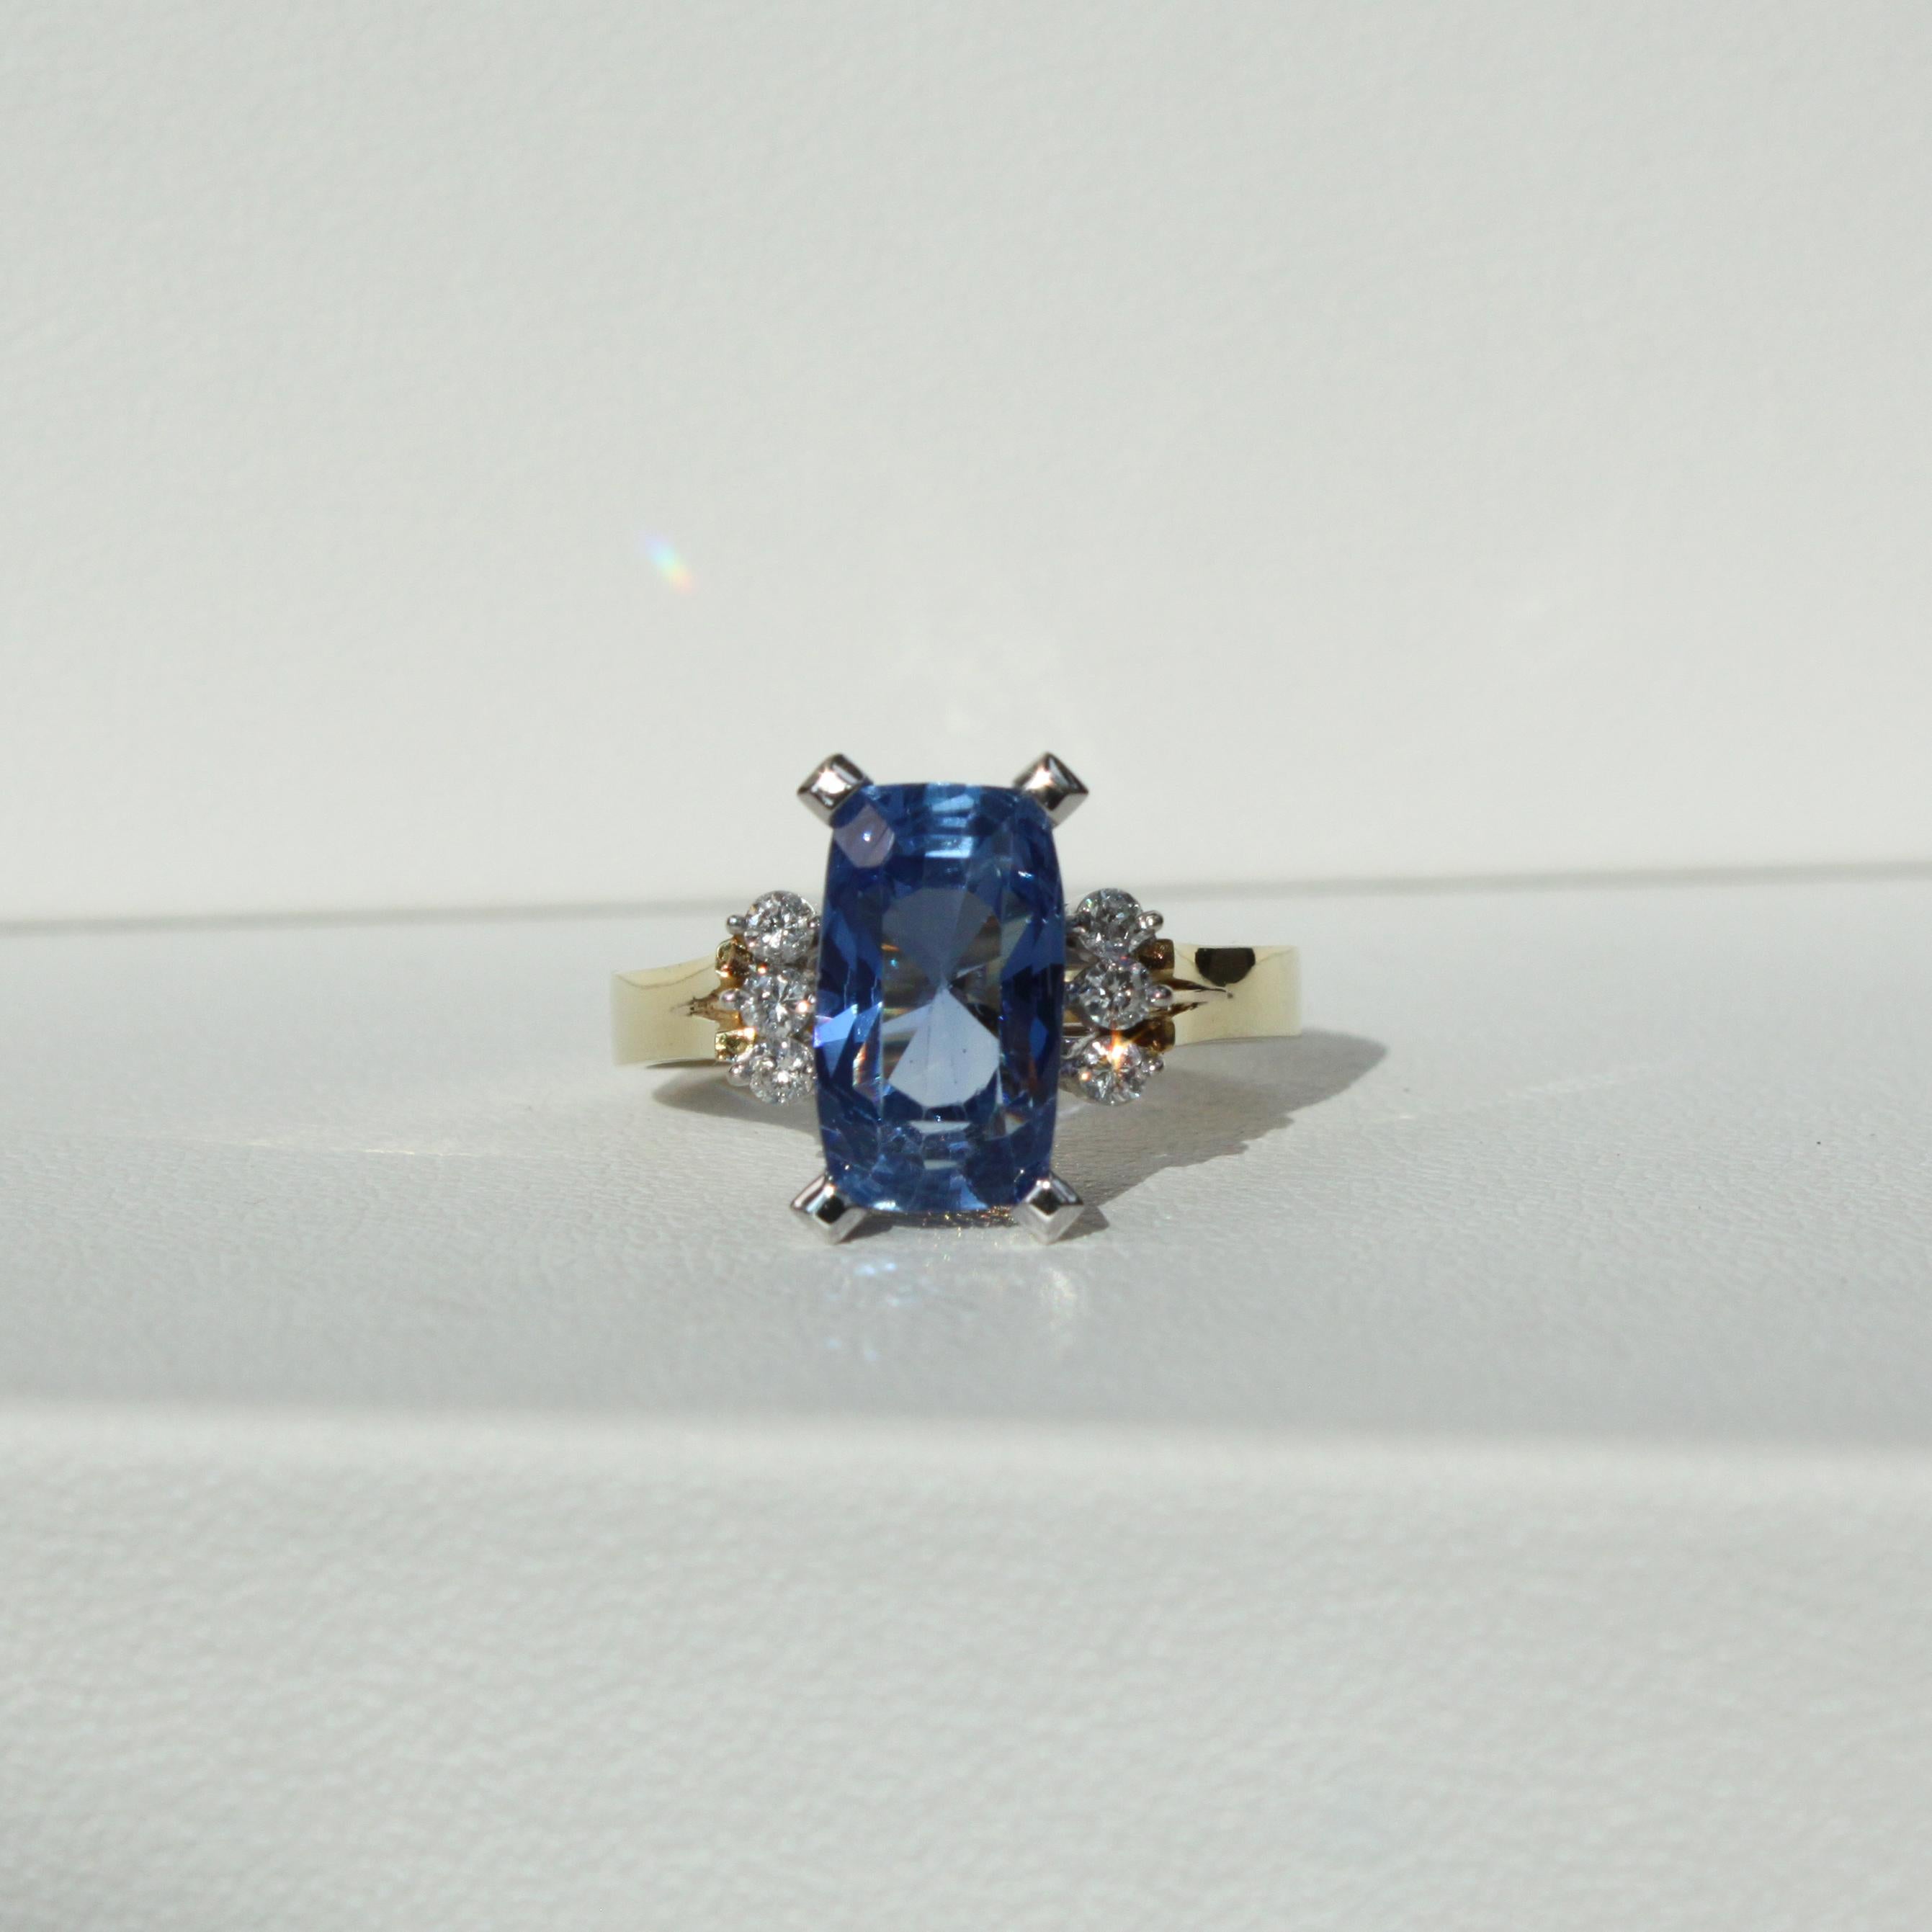 Métal - Or 18K
6.98ct Saphir bleu de Ceylan non chauffé
0.18ct Diamants naturels de couleur D-G
Poids total de l'anneau 6,34 g
Taille de l'anneau 58 EU / 8.5 US / 18.5mm

Laissez-vous séduire par l'allure d'une époque révolue avec notre bague